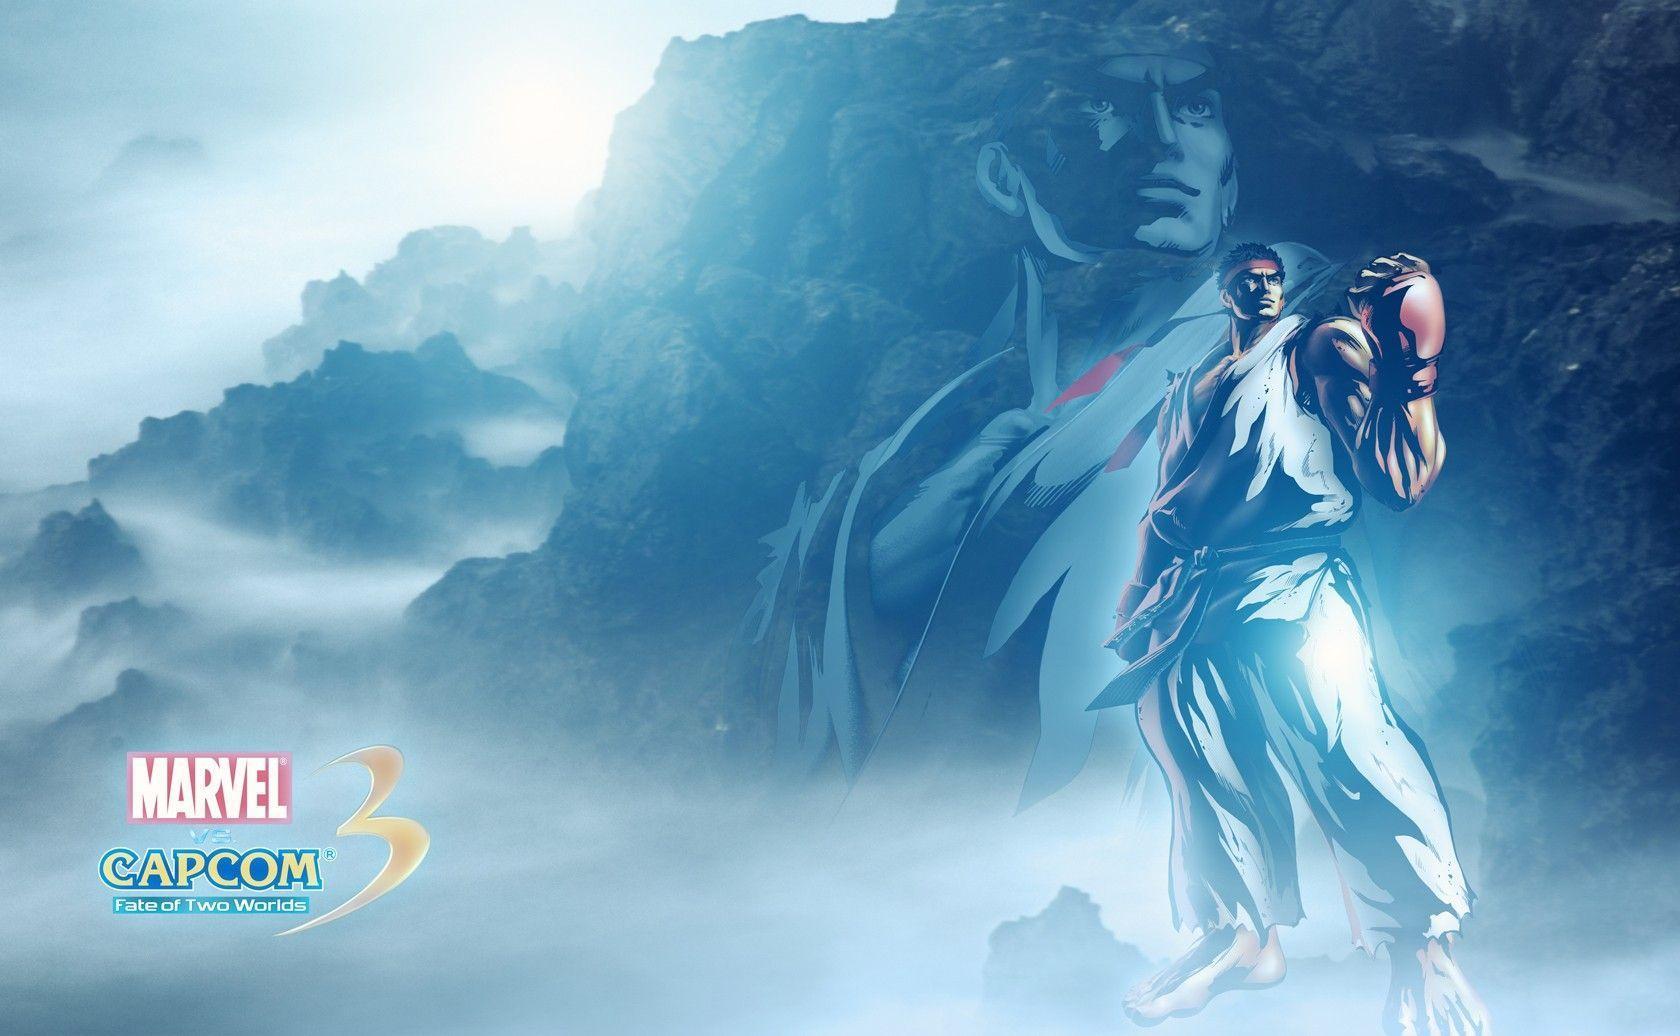 Free Ryu From Capcom Wallpaper, Free Ryu From Capcom HD